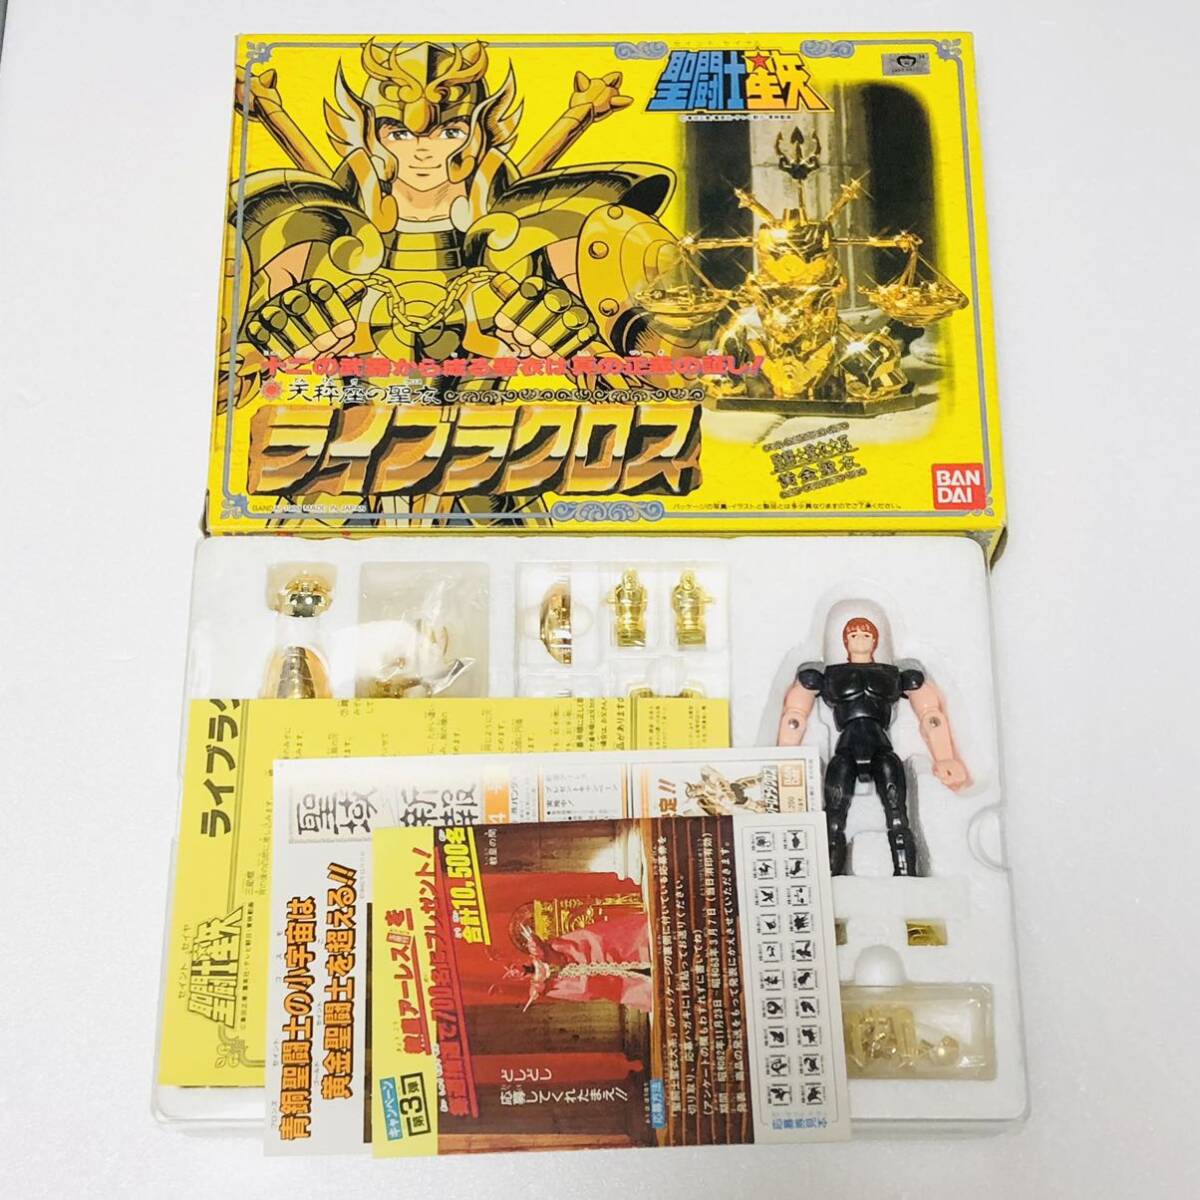  Saint Seiya ... плащаница большой серия Live лакросс желтый золотой плащаница Bandai Saint Seiya Myth Cloth Showa Chogokin Cross игрушка не использовался . близкий прекрасный товар 